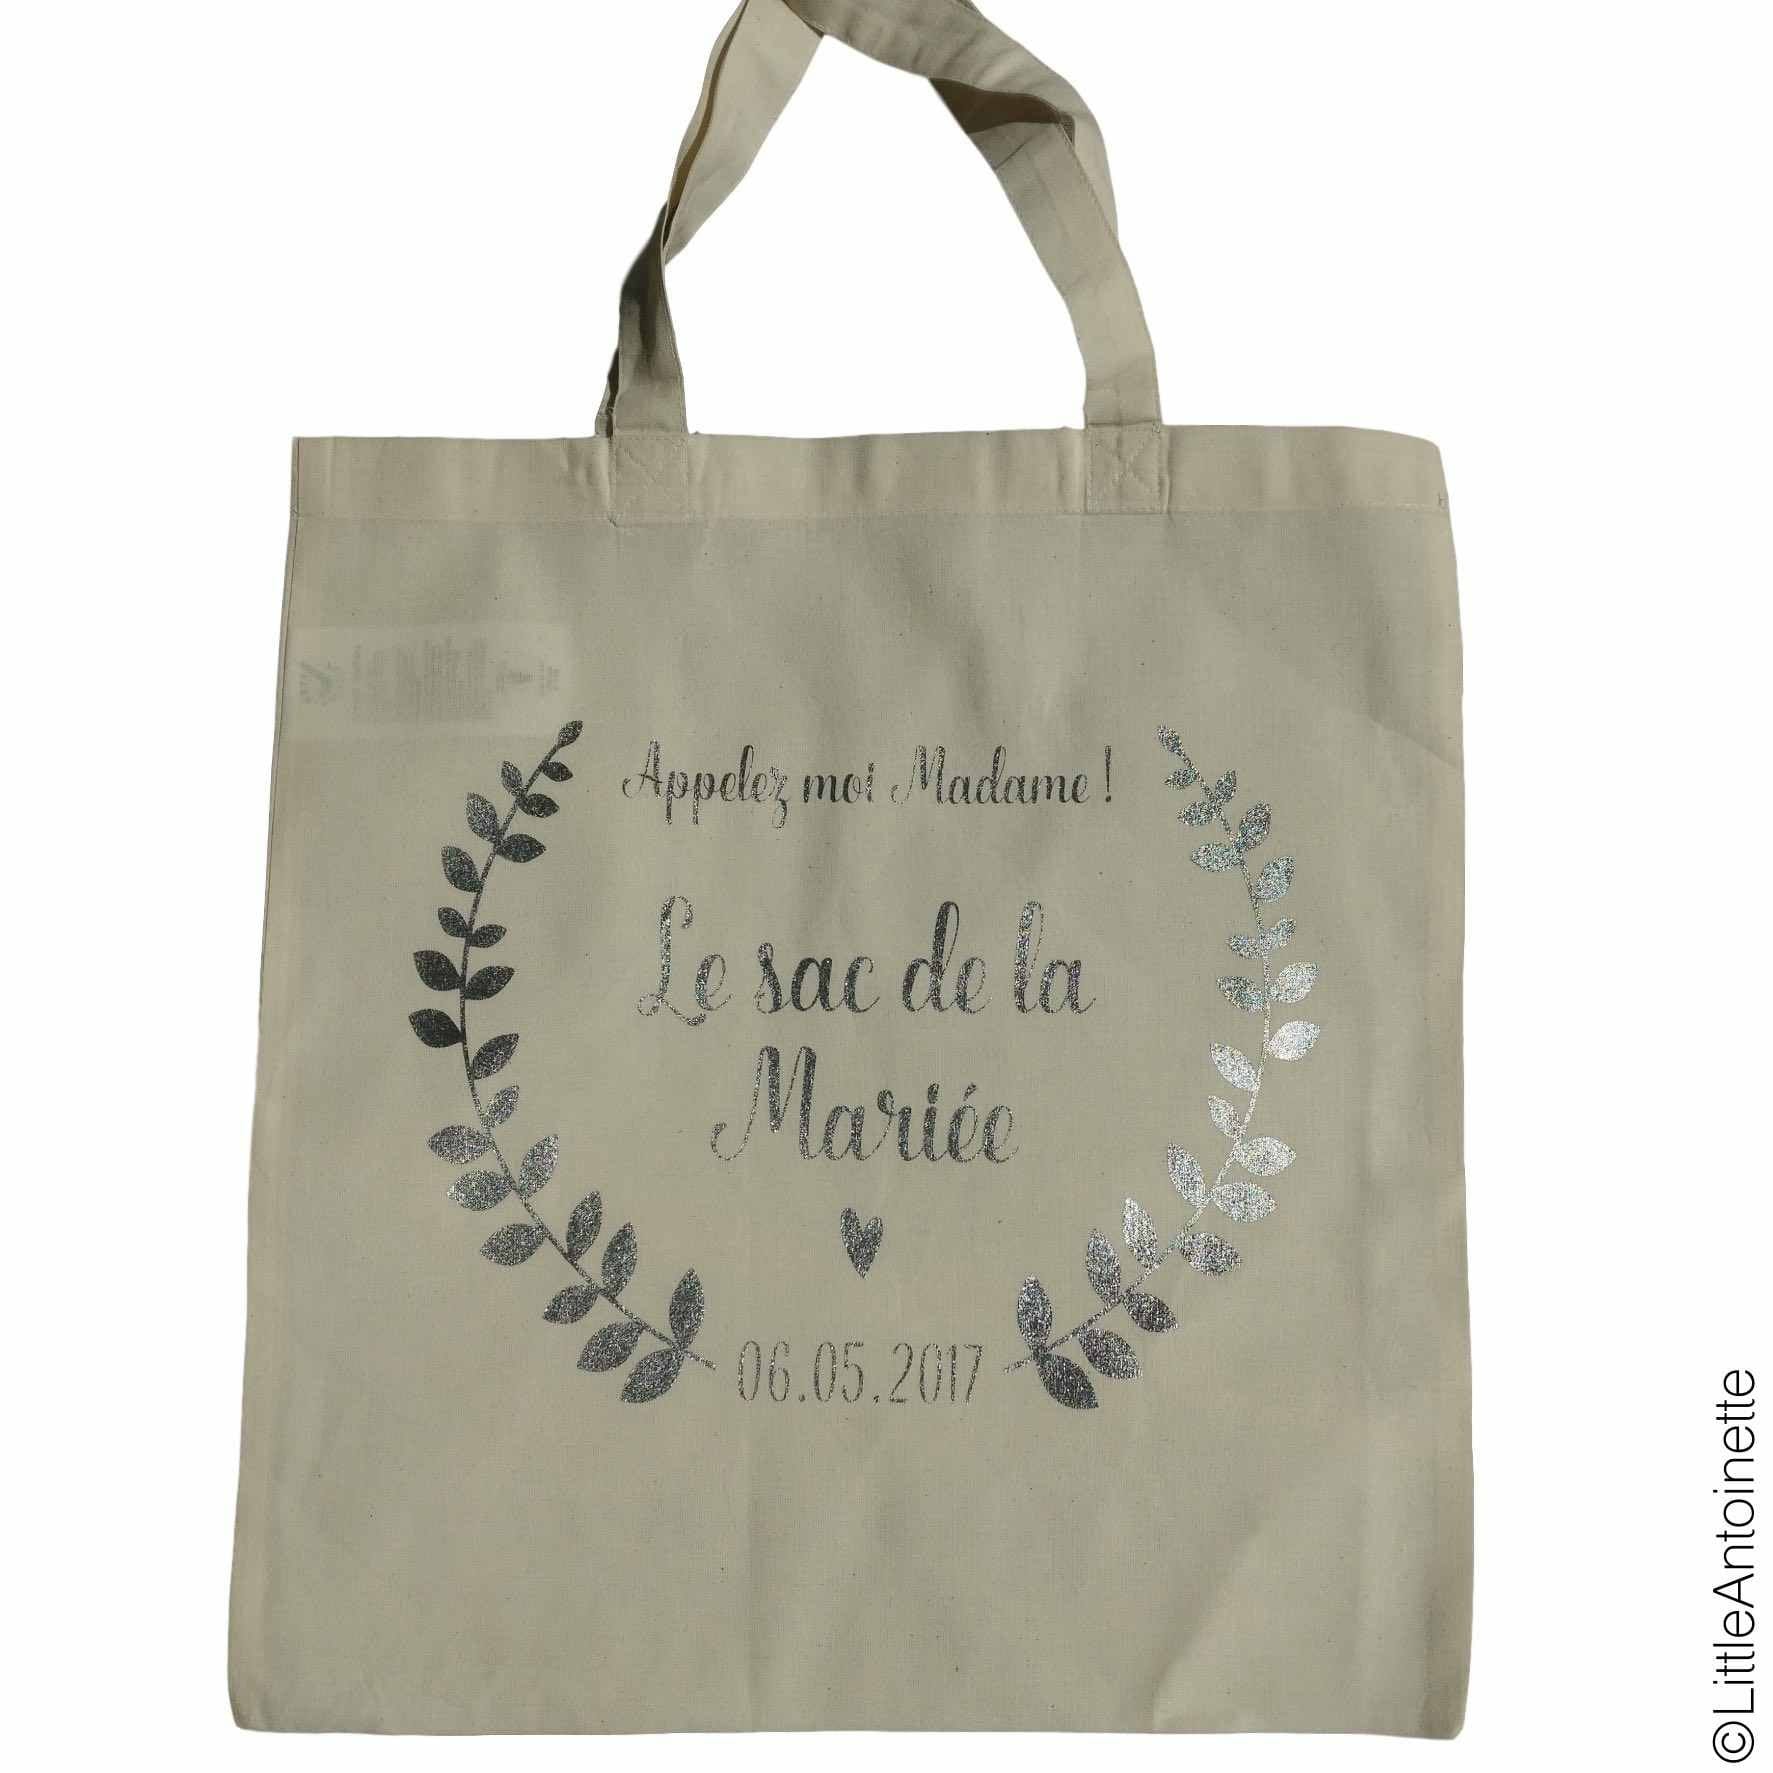 Tote Bag "Le sac de la Mariée" - Little Antoinette